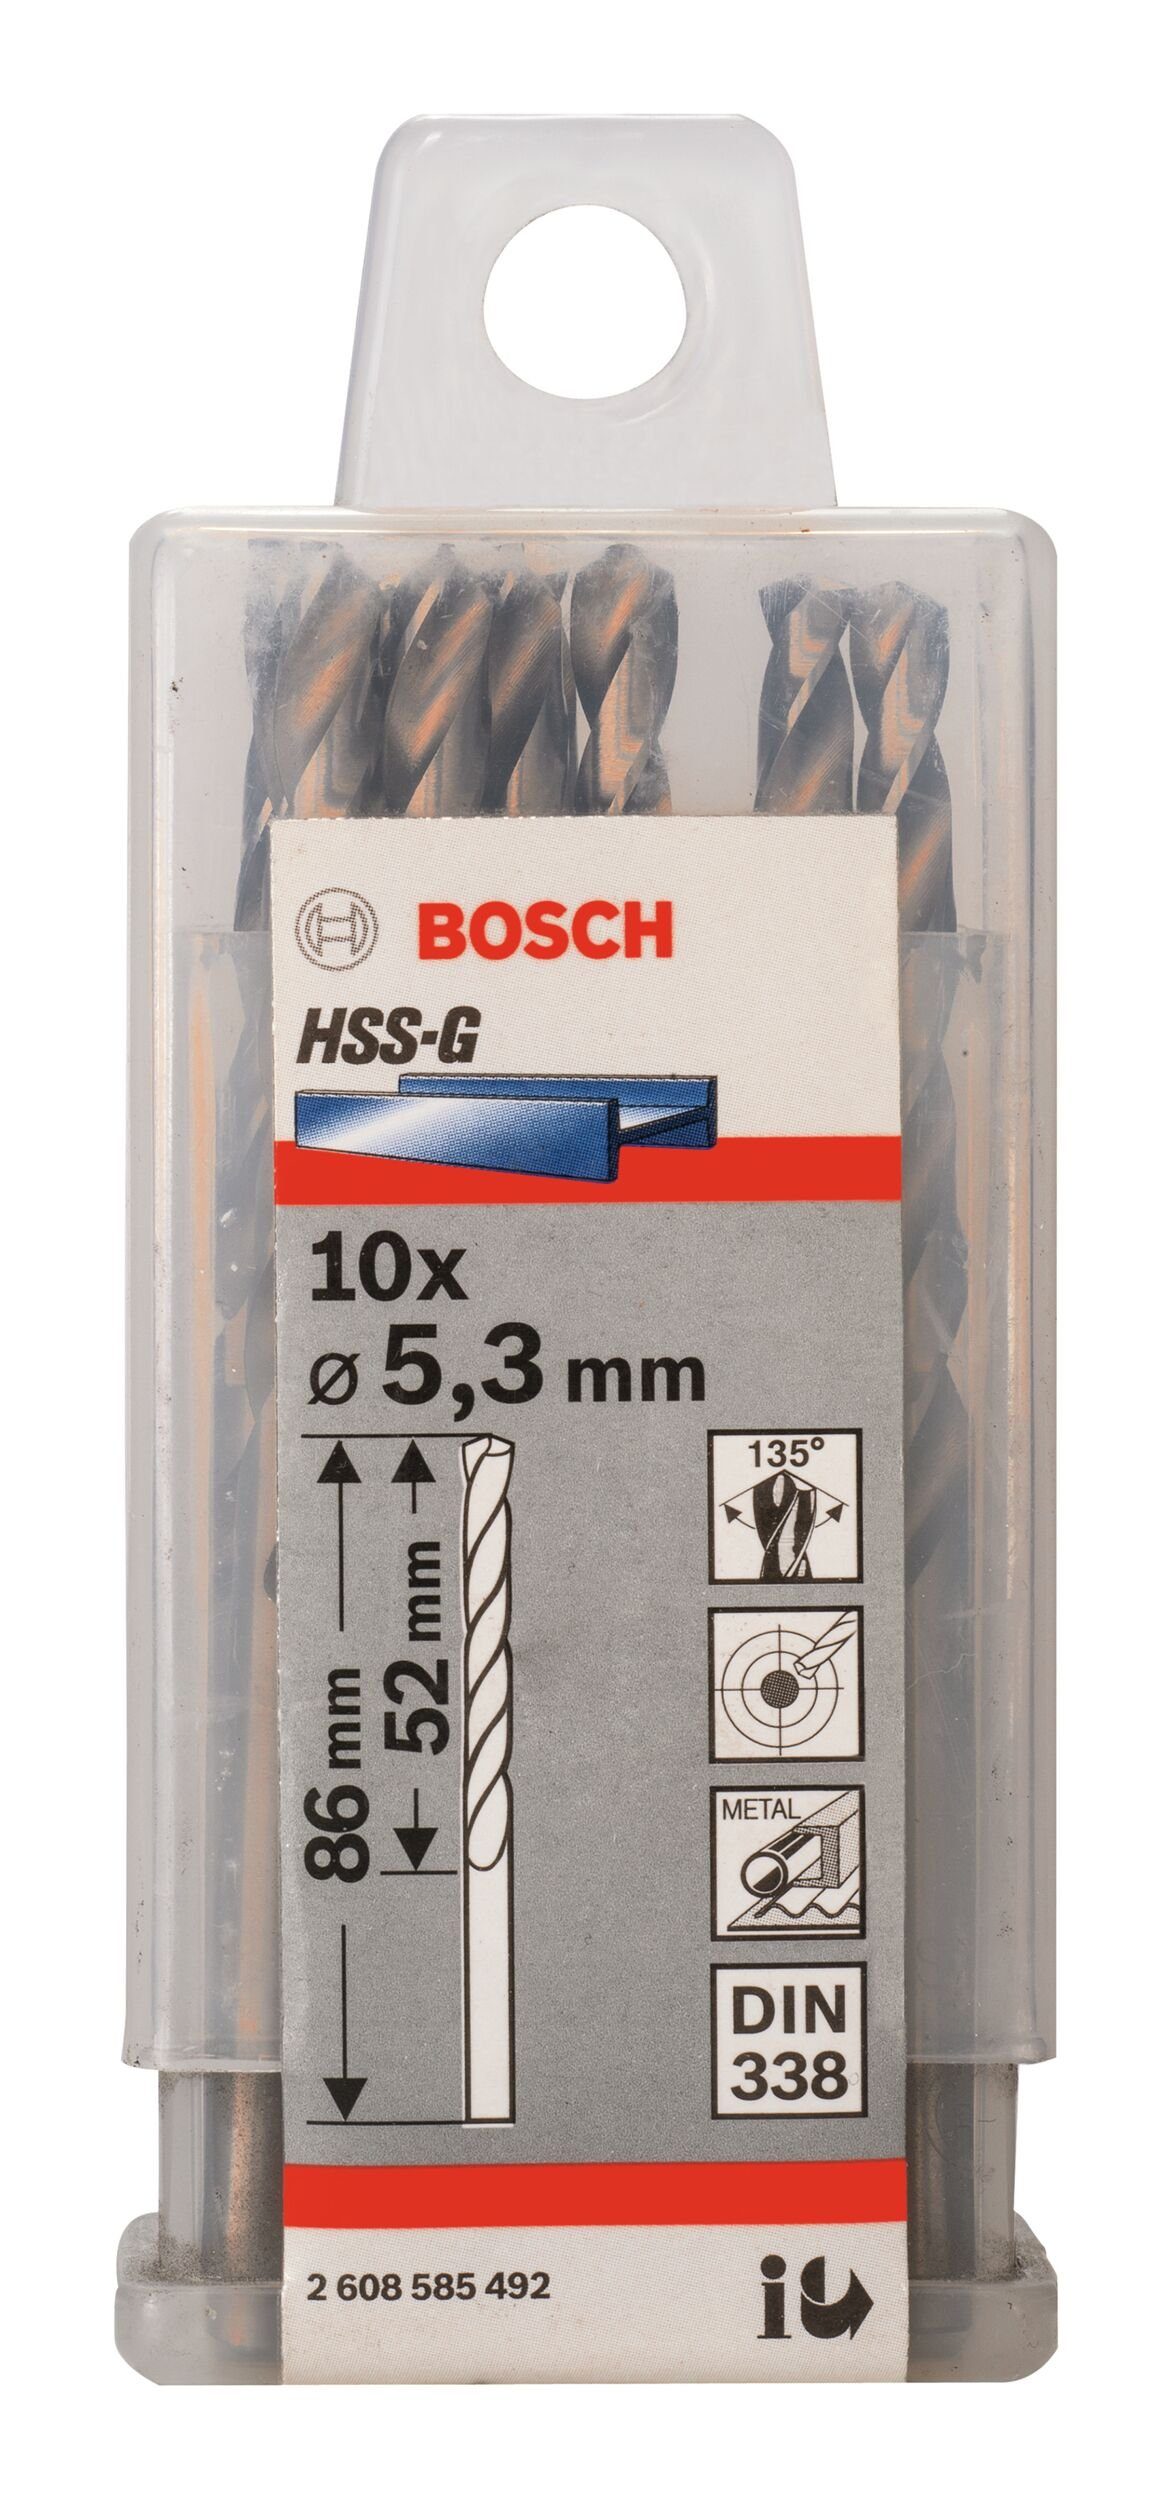 BOSCH HSS-G mm 10er-Pack Metallbohrer, 52 5,3 338) Stück), - (DIN - x (10 x 86